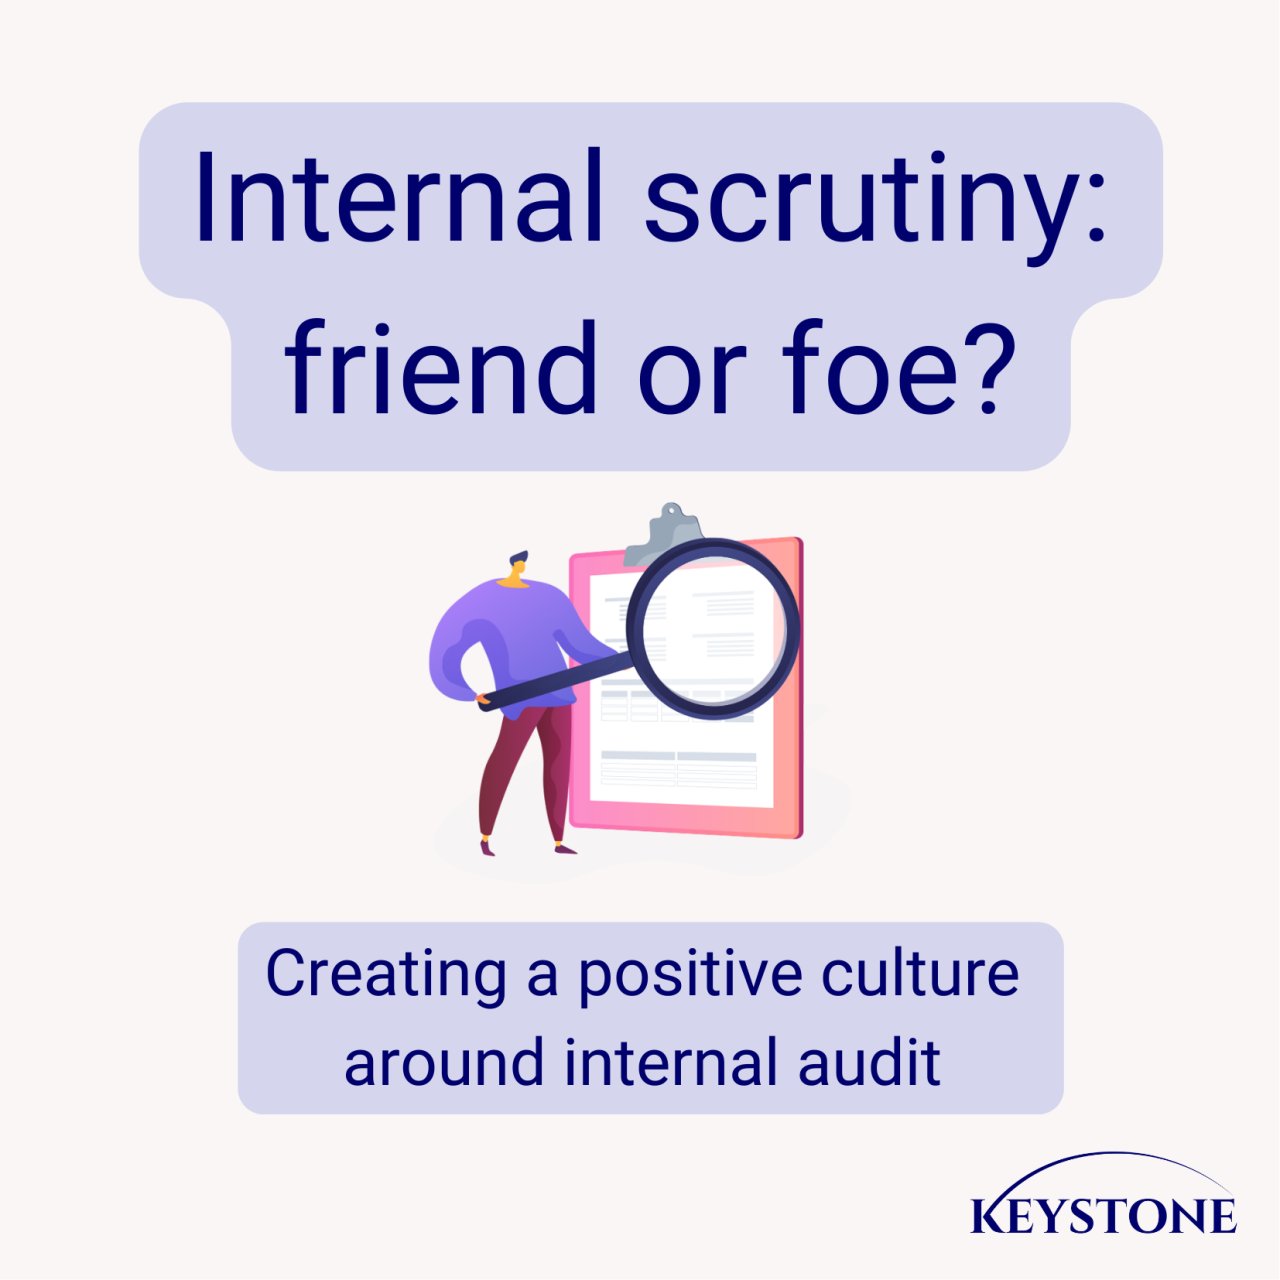 Internal scrutiny: friend or foe?